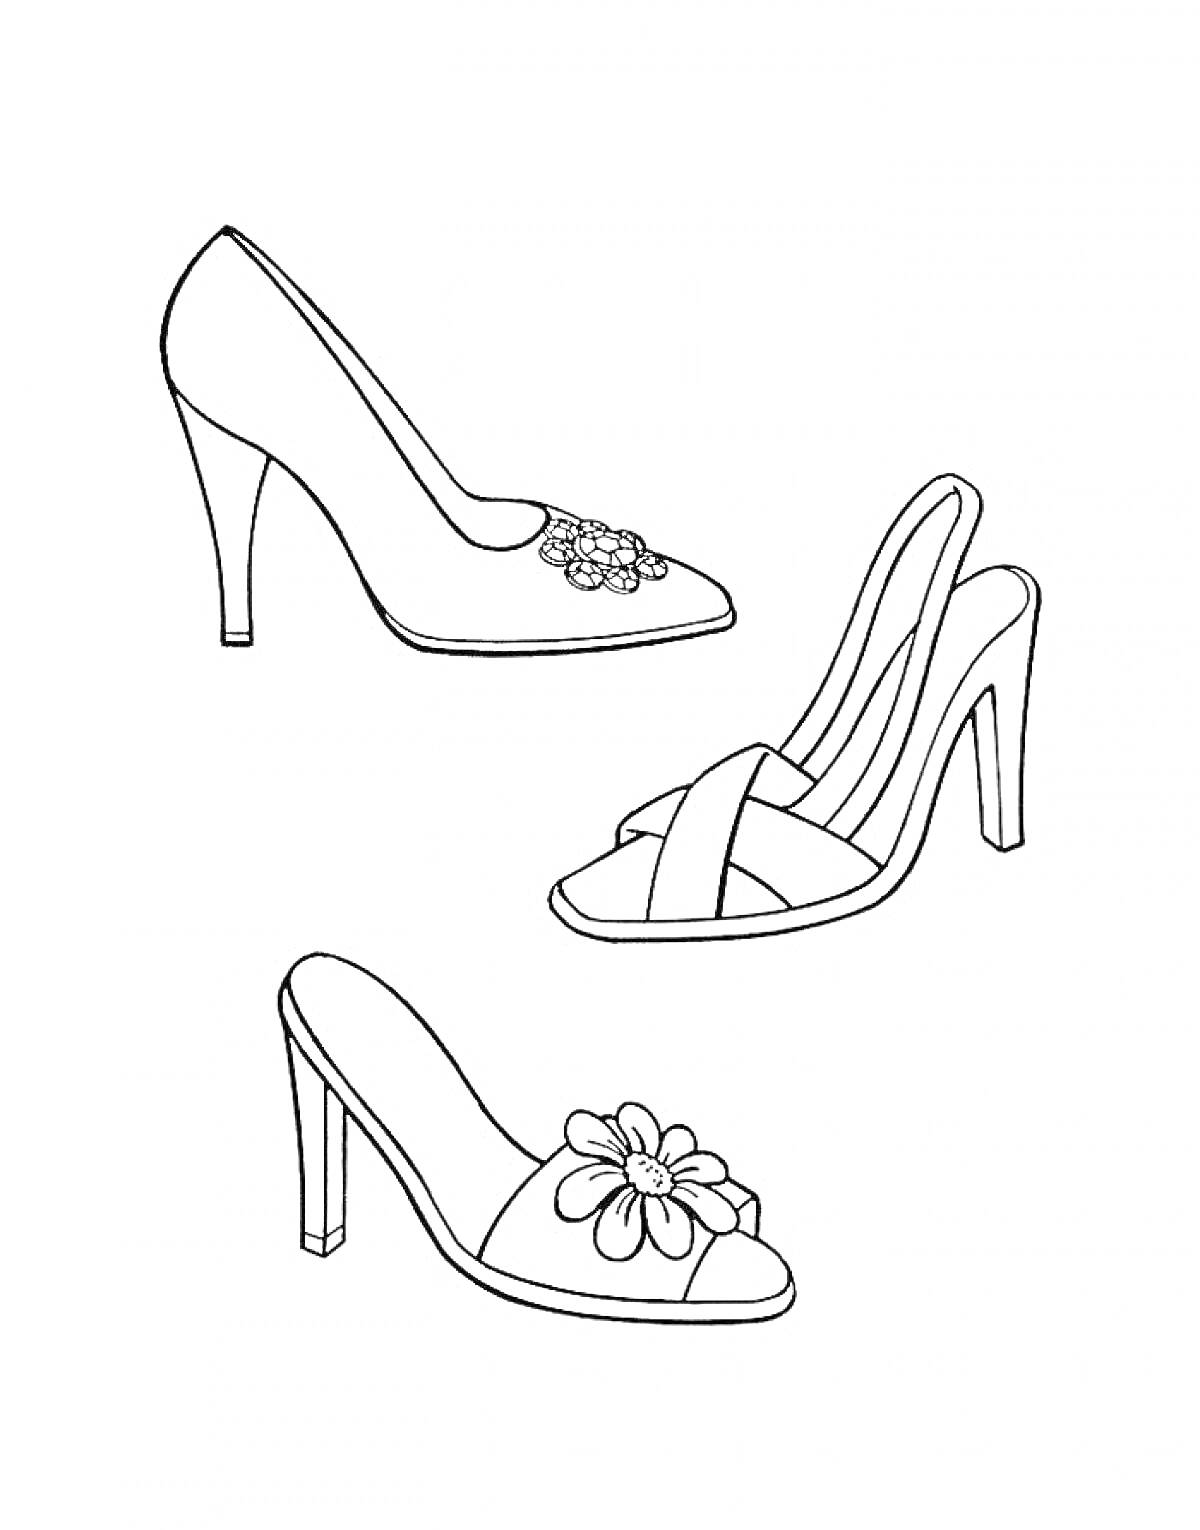 Три пары женских туфель на каблуке с цветочными украшениями: классические туфли на шпильке с цветочным дизайном на носке, босоножки с перекрещивающимися ремешками и цветочным элементом, мюли на каблуке с большим цветком